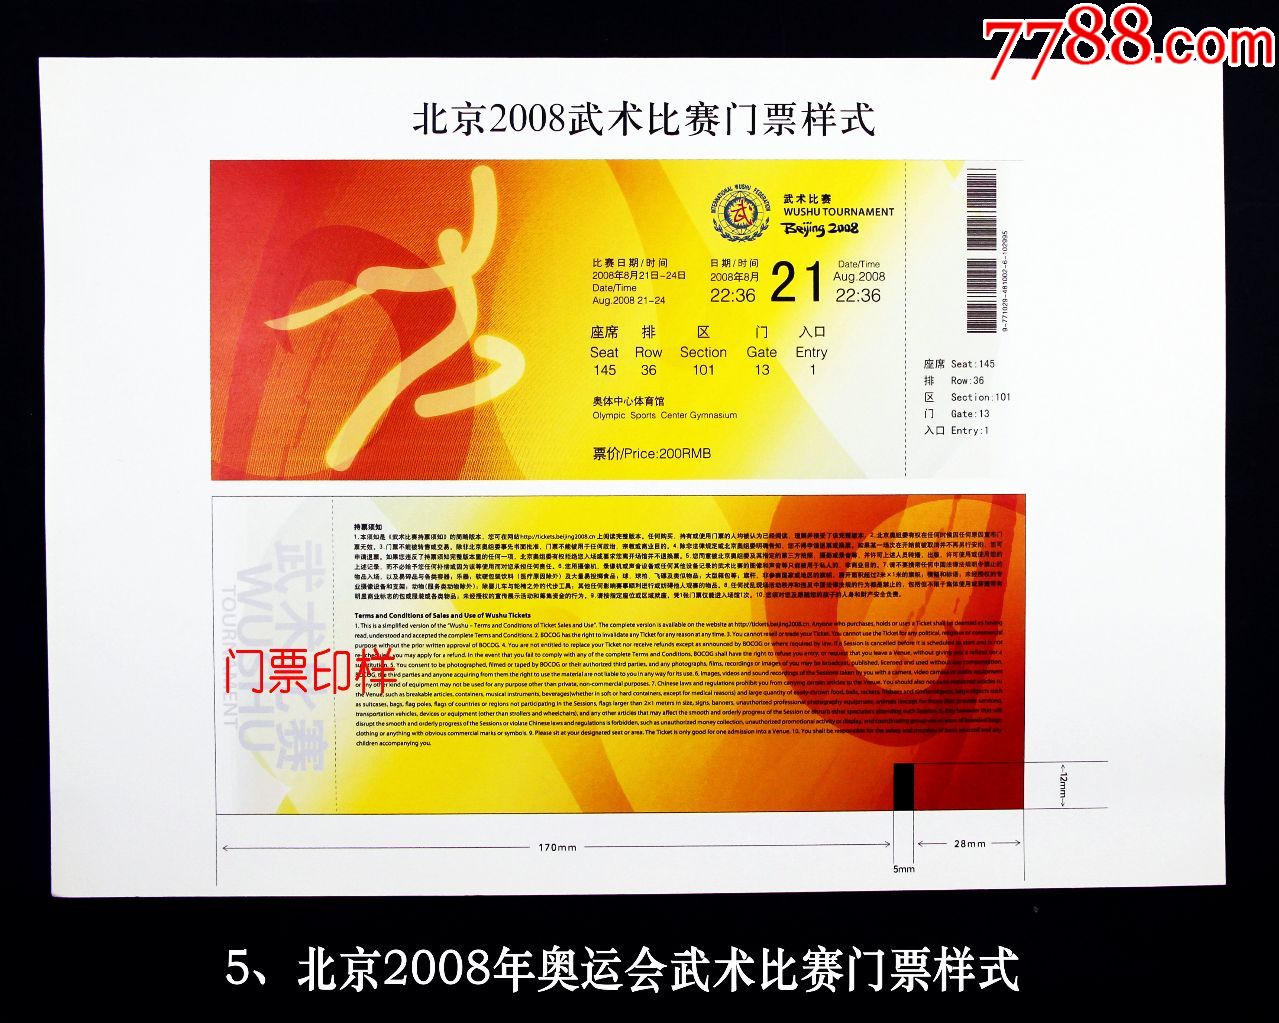 北京2008年奥运会武术比赛门票样式